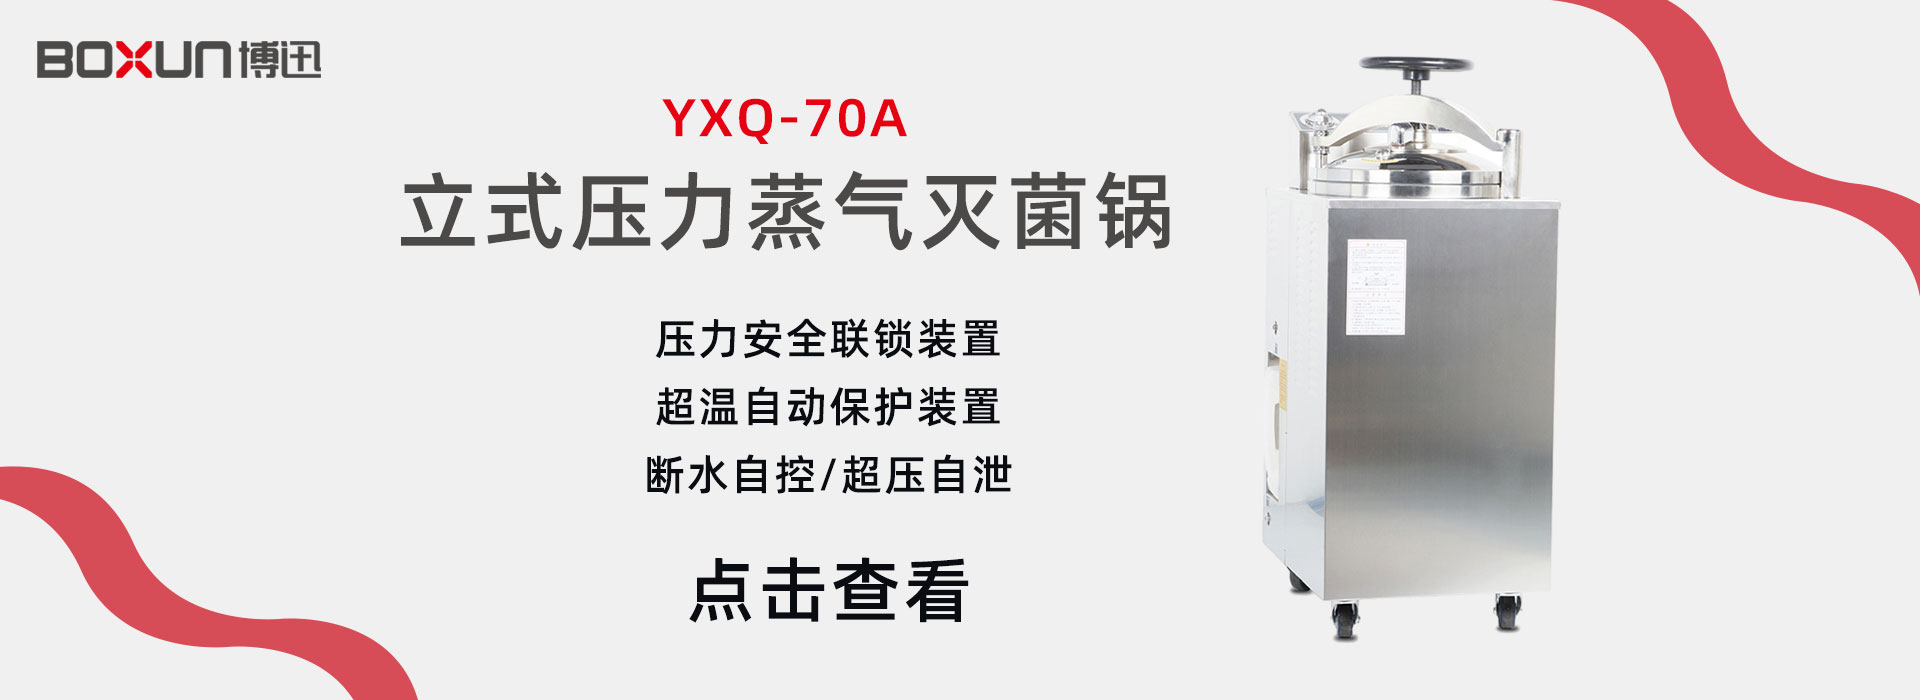 上海博迅YXQ-70A立式压力蒸汽灭菌器 灭菌锅